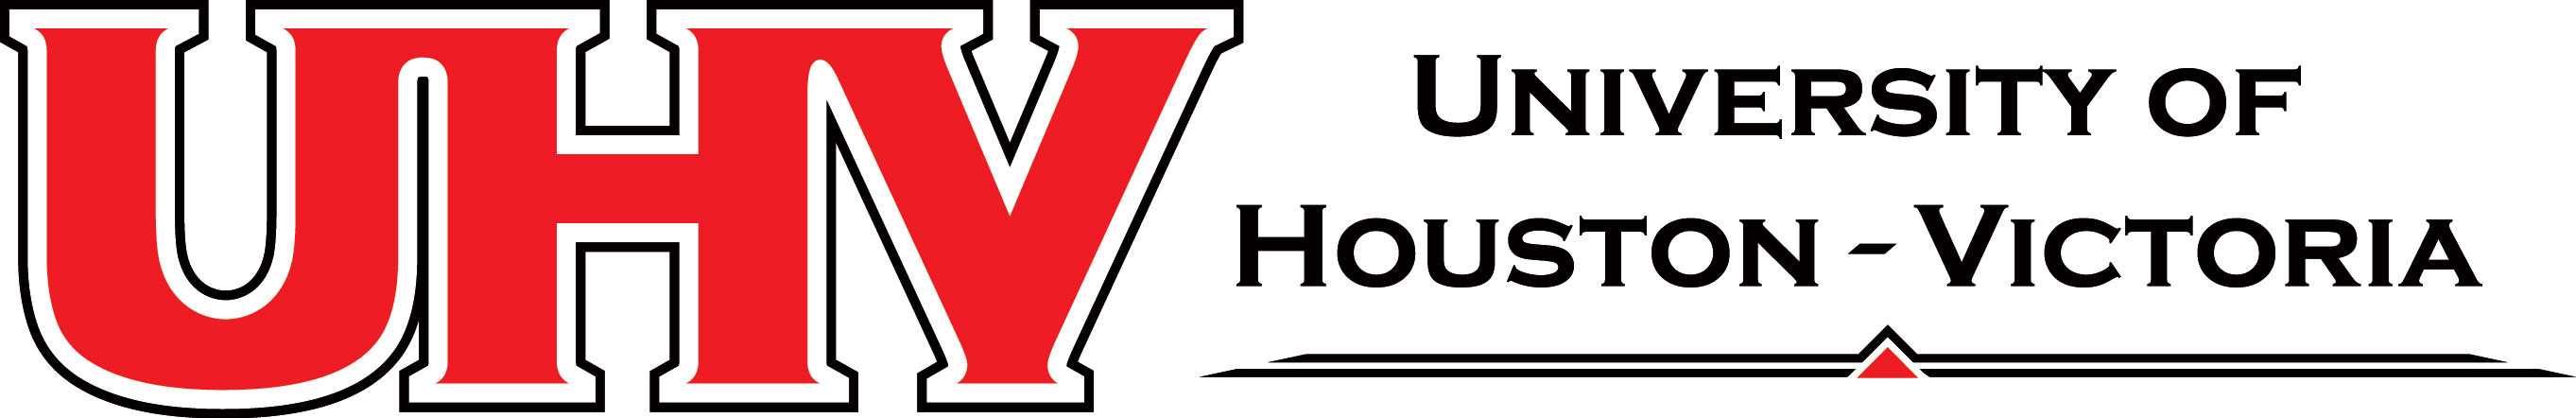 UHV-Logo-Horizontal.jpg